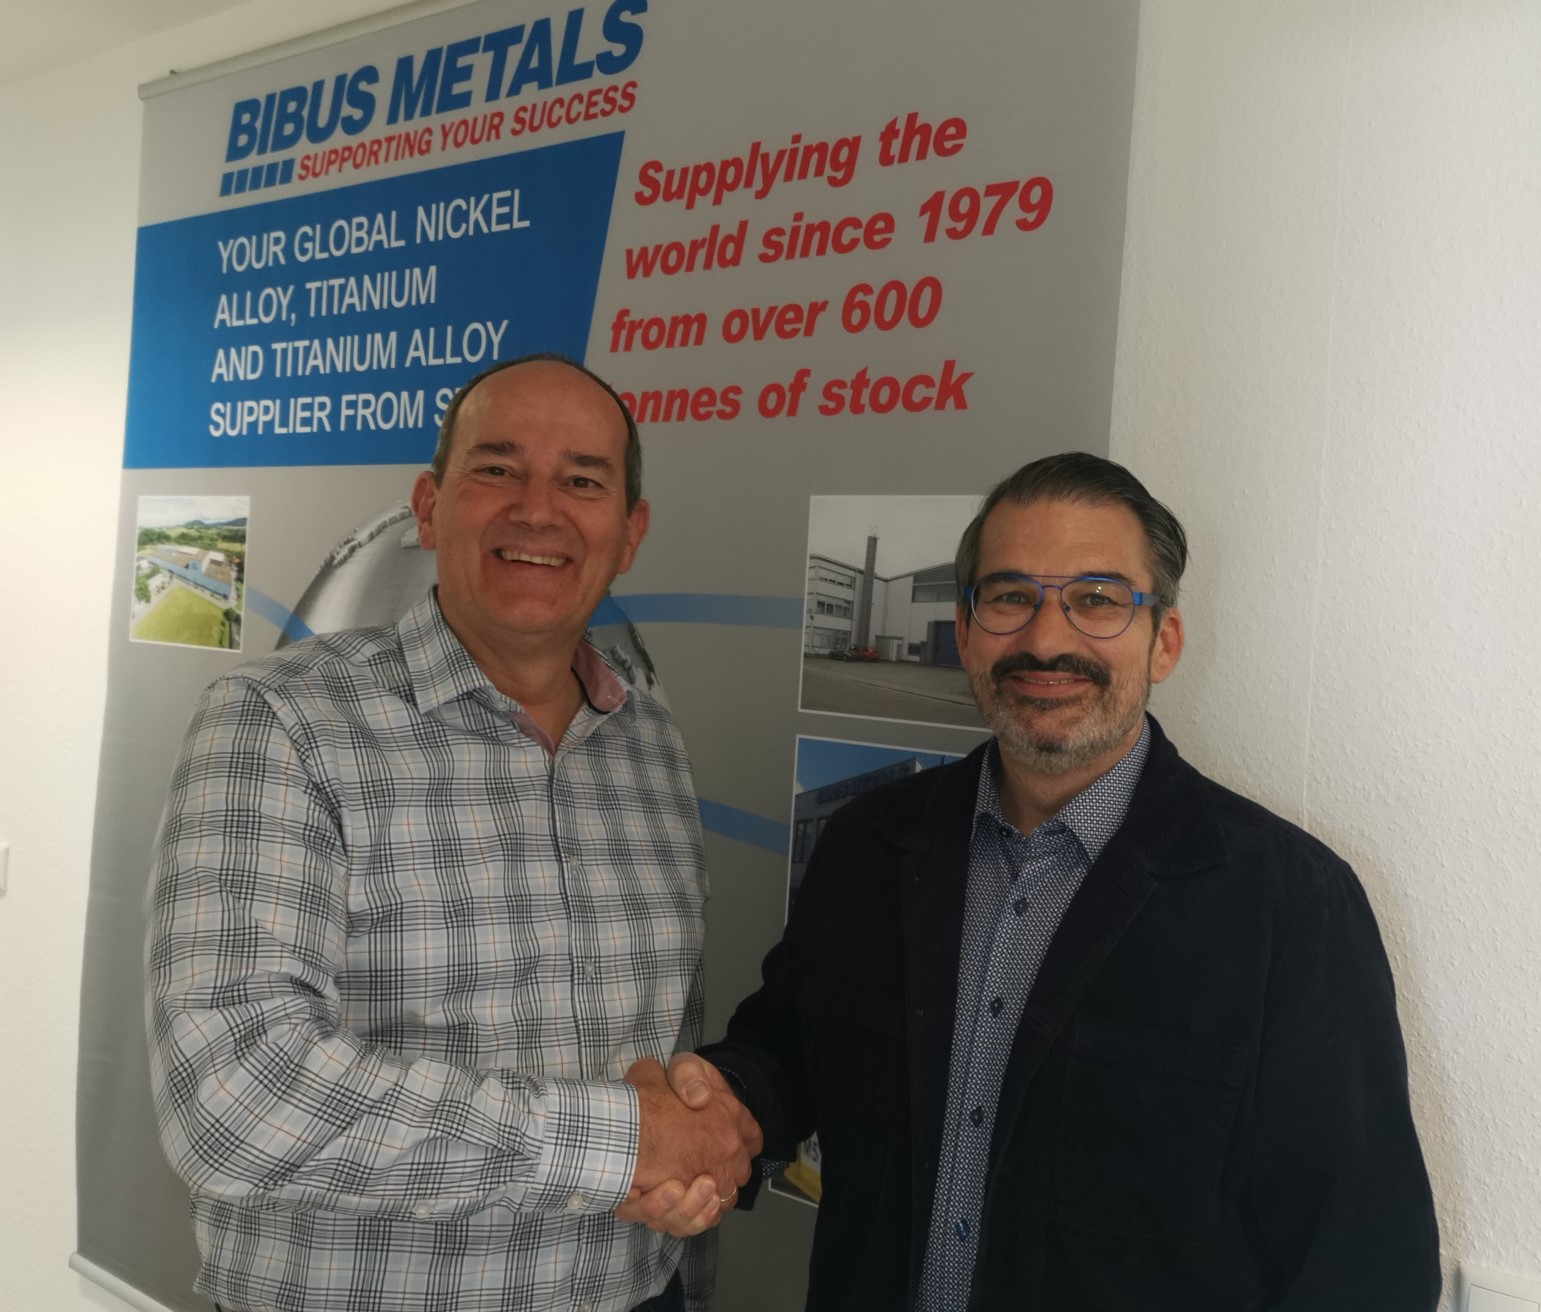 BIBUS METALS GmbH welcomes new employee